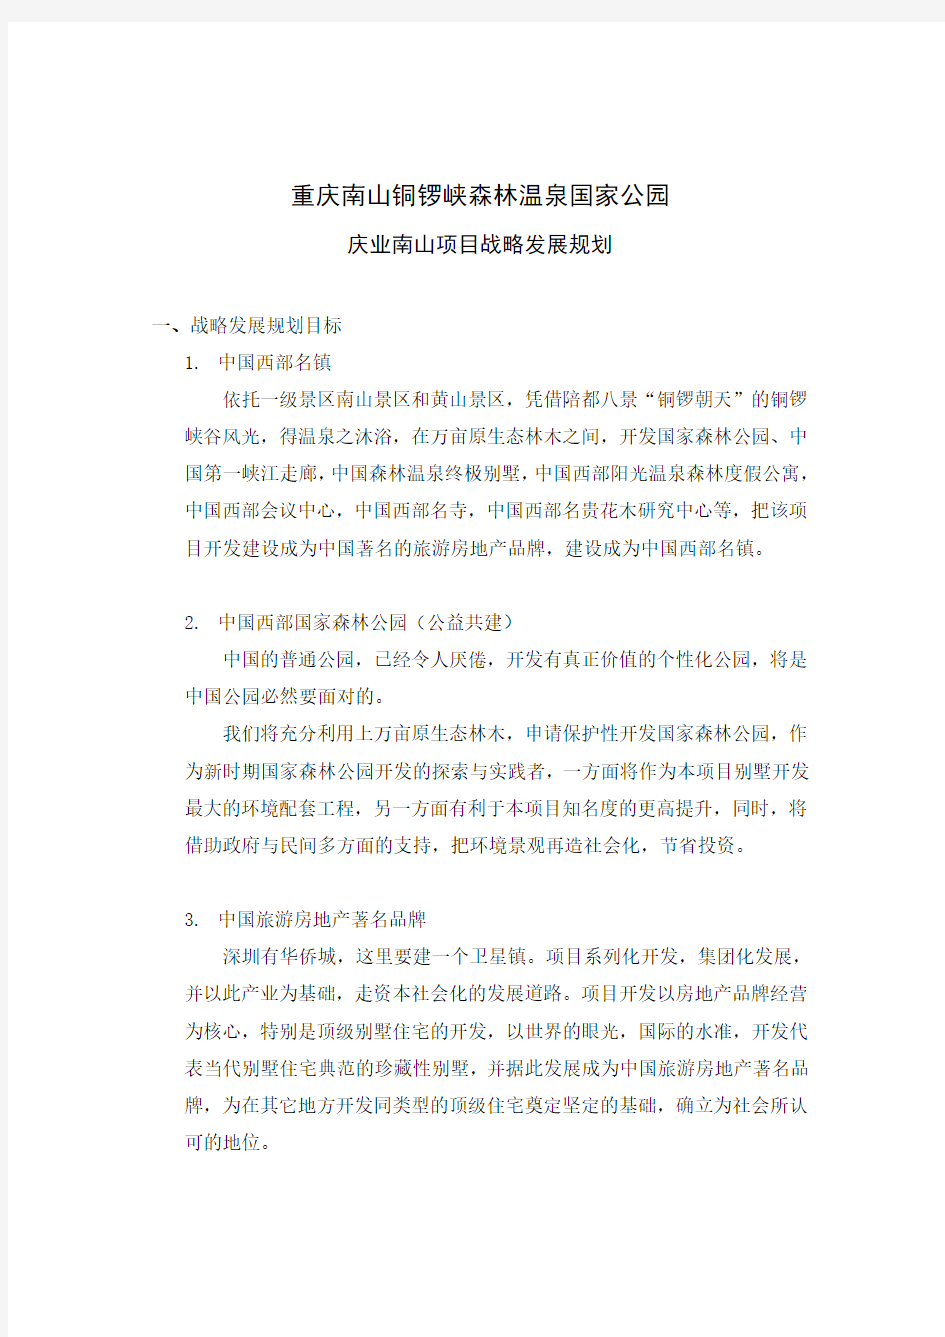 重庆庆业南山项目战略发展规划